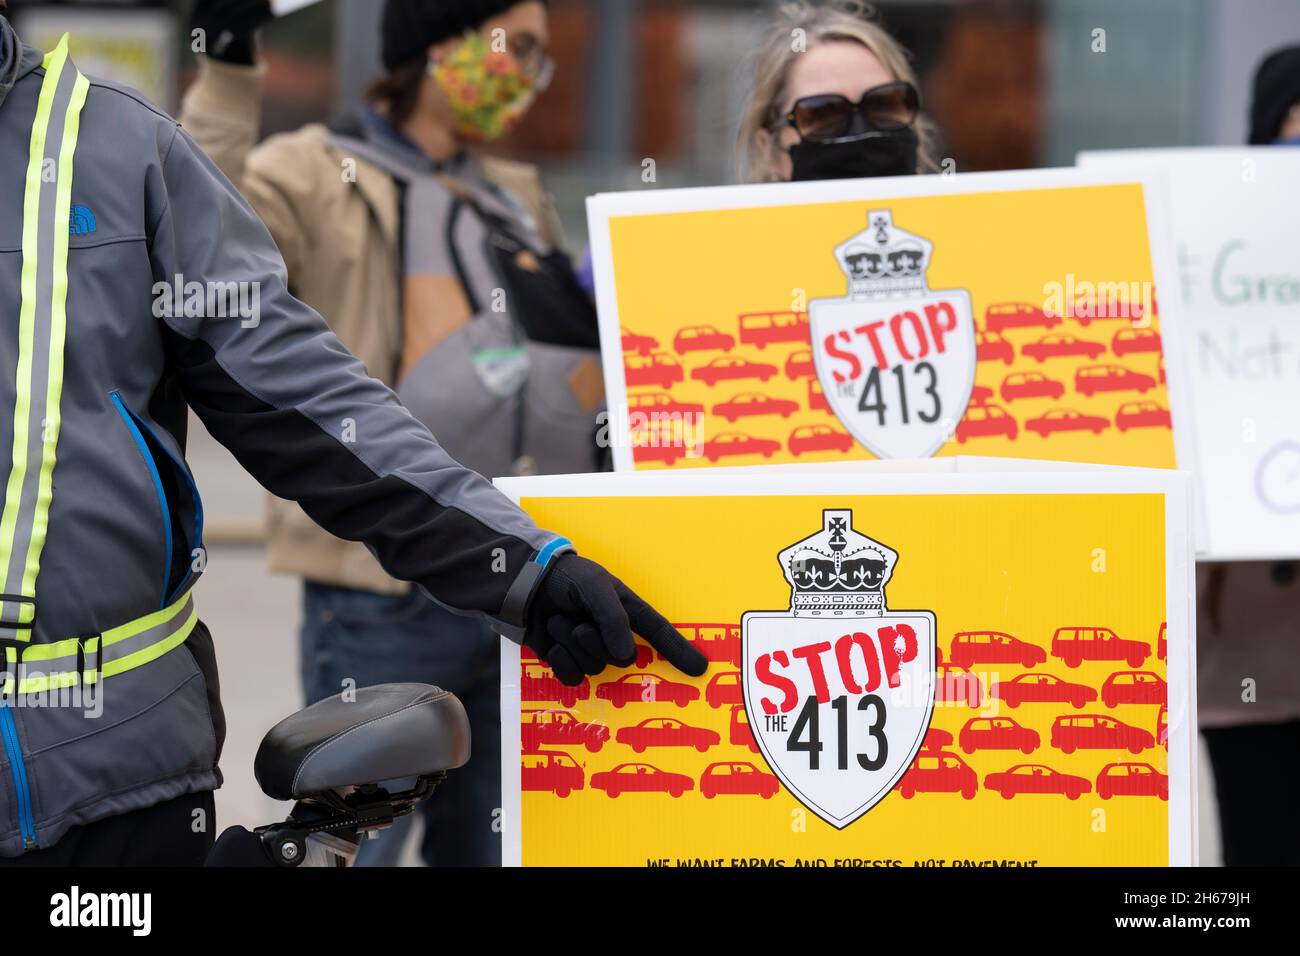 Des gens manifestent contre le projet de route 413, arrêt 413 de l'Ontario et sauve la ceinture de verdure, le 13 2021 novembre Banque D'Images